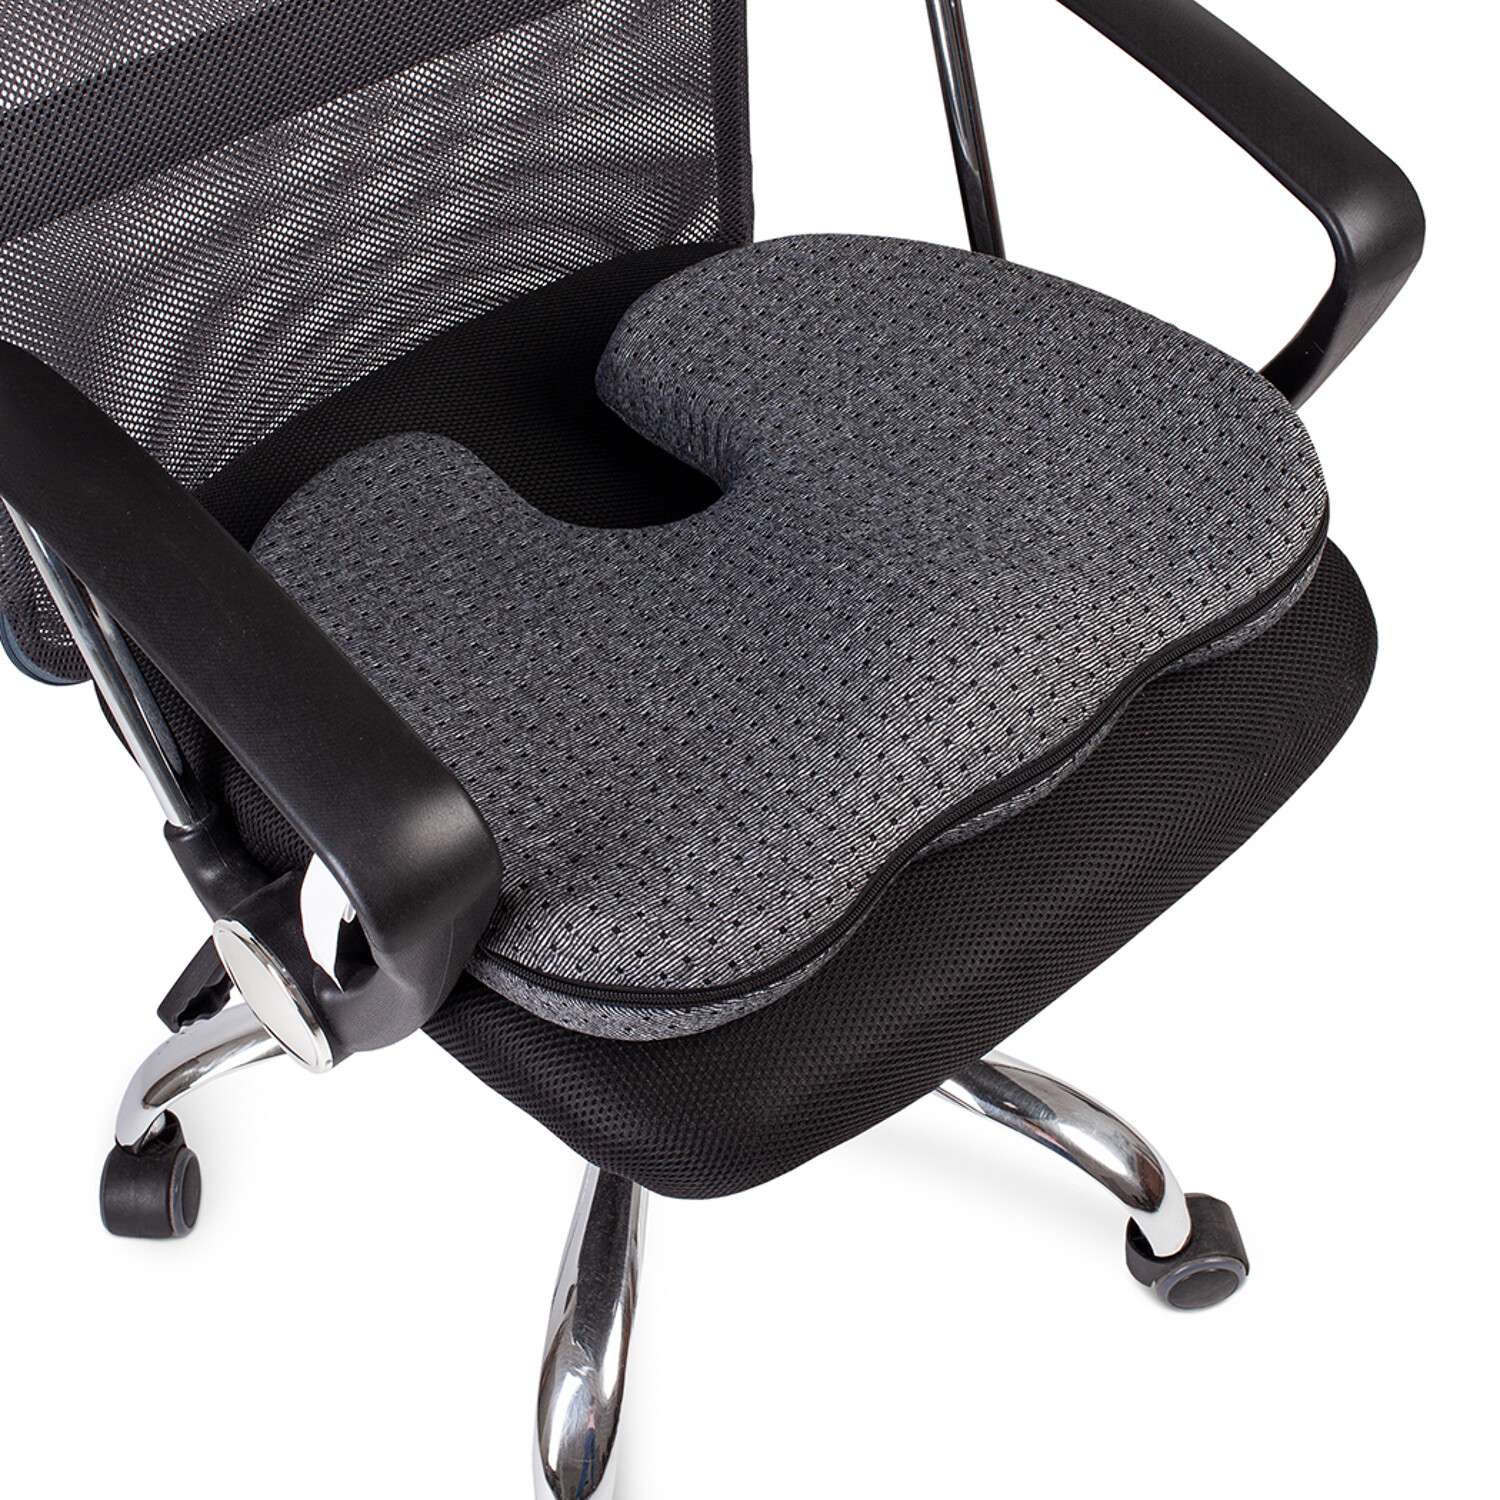 Ортопедическая подушка Ambesonne под копчик для офисного кресла или автомобильного сиденья 46x36x8 см - фото 3